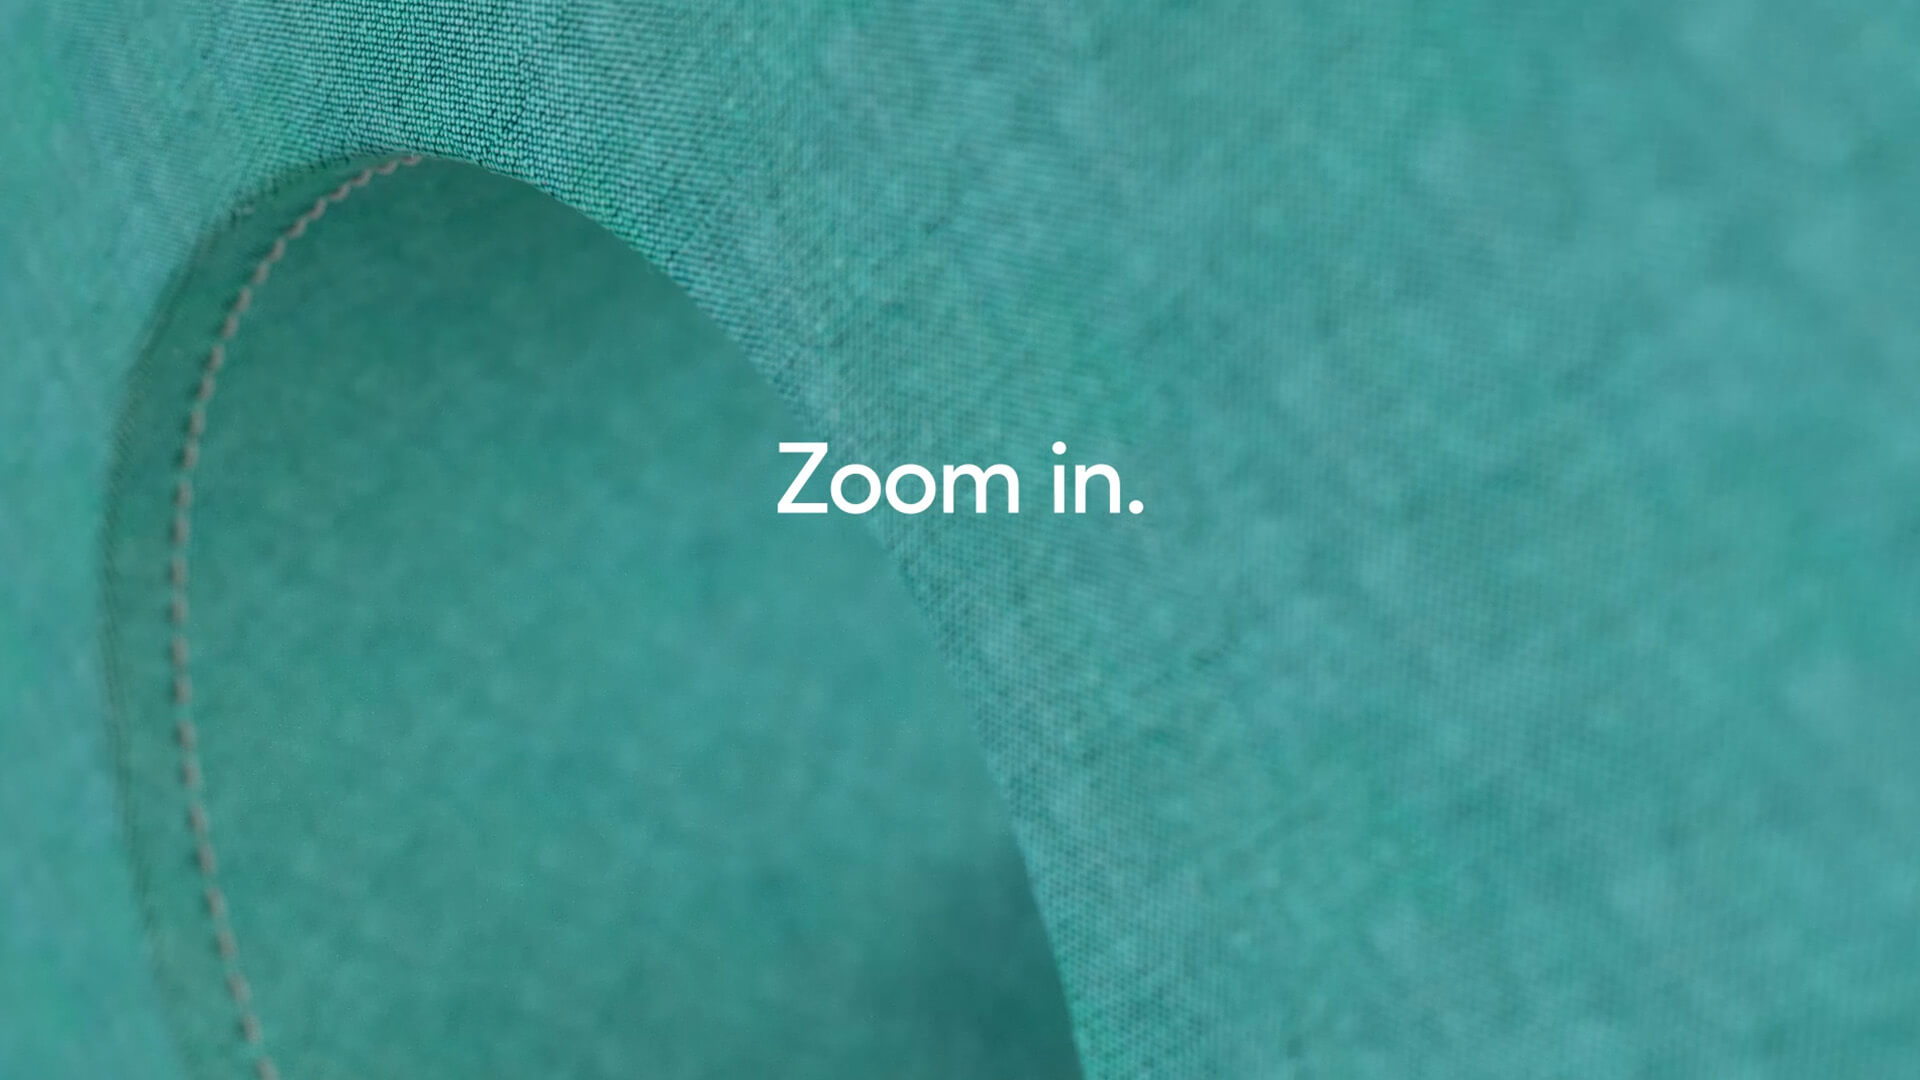 Afbeelding uit de motion graphic: structuur van stof in blauwe kleur met de tekst "Zoom in".